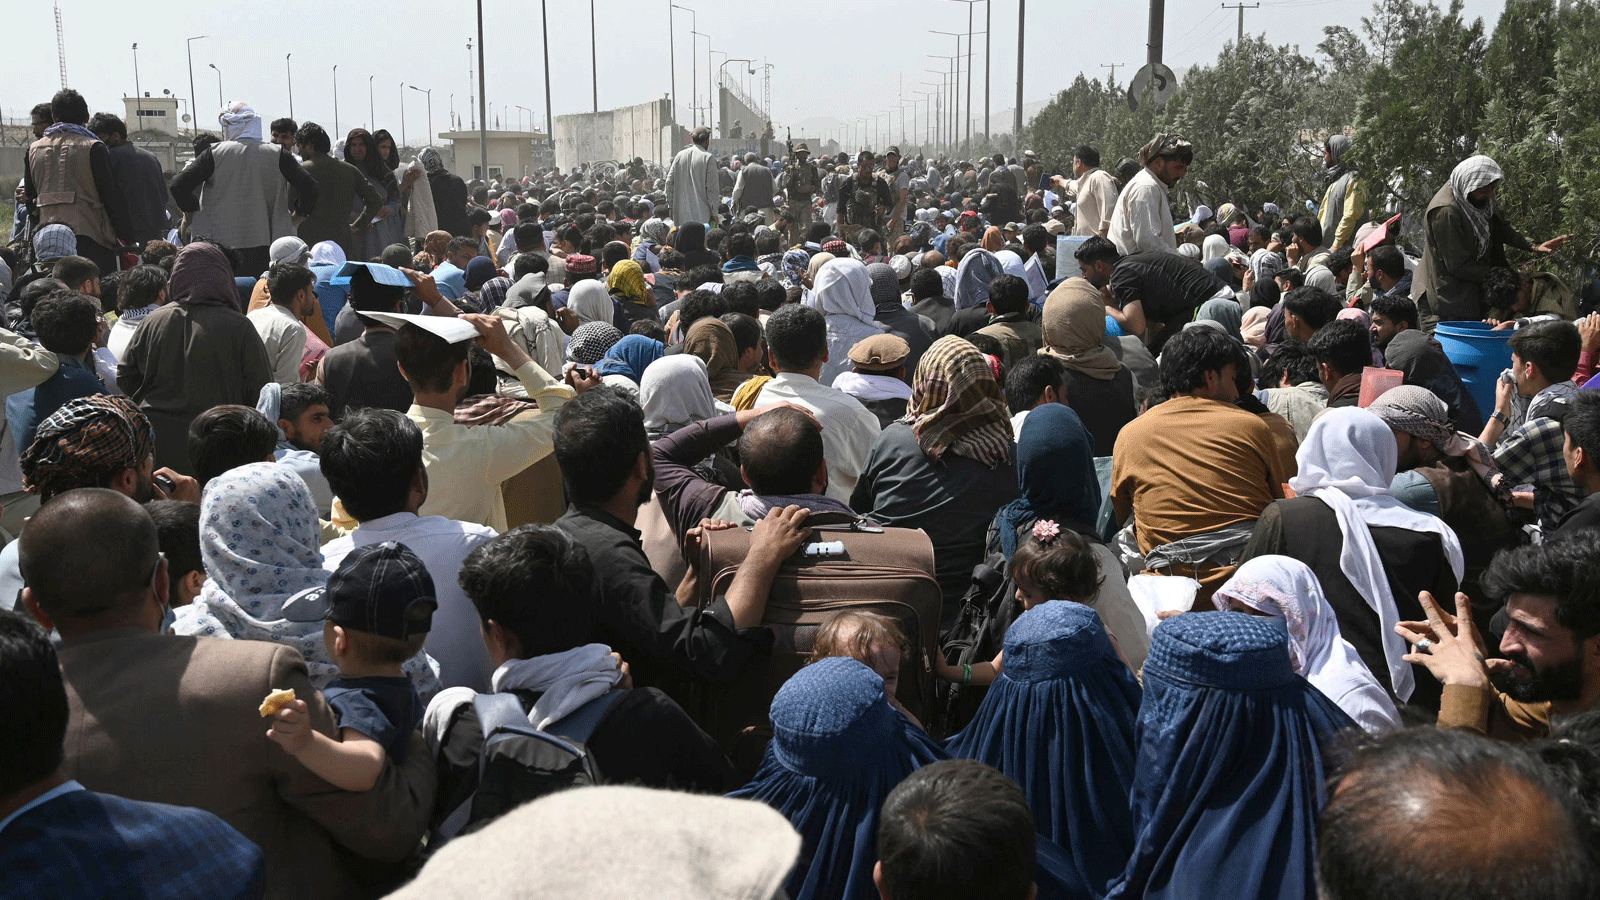 أفغان يحاولون الفرار من البلاد بعد سيطرة طالبان العسكرية. يتجمعون على جانب طريق بالقرب من الجزء العسكري من مطار كابول في 20 آب/أغسطس 2021 